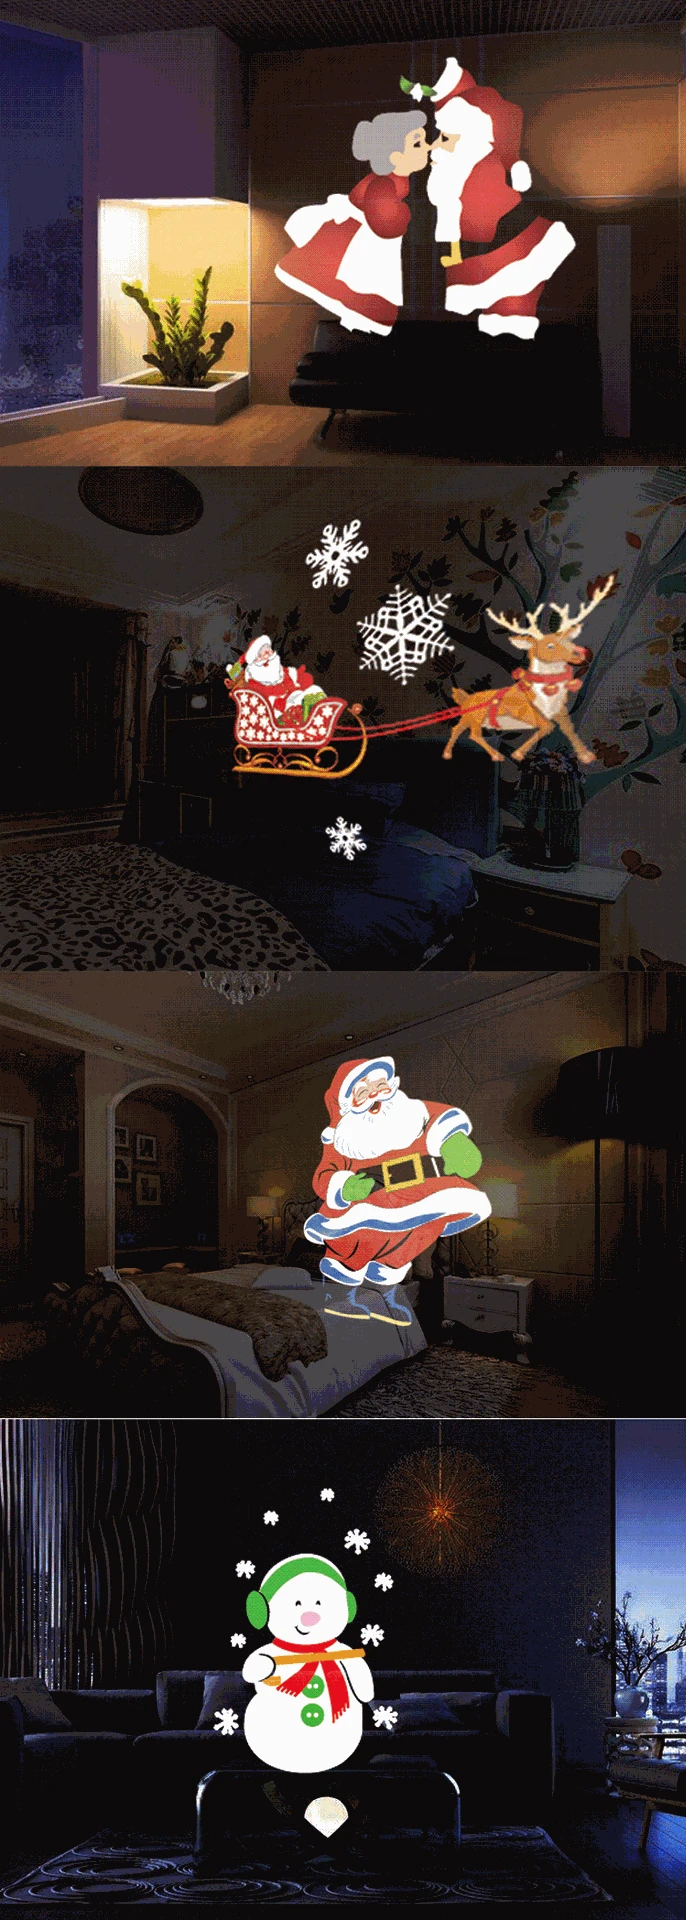 Санта Клаус Снеговик светодиодный анимации свет для рождественской вечеринки лампа проектора удаленного Управление с таймером плеер